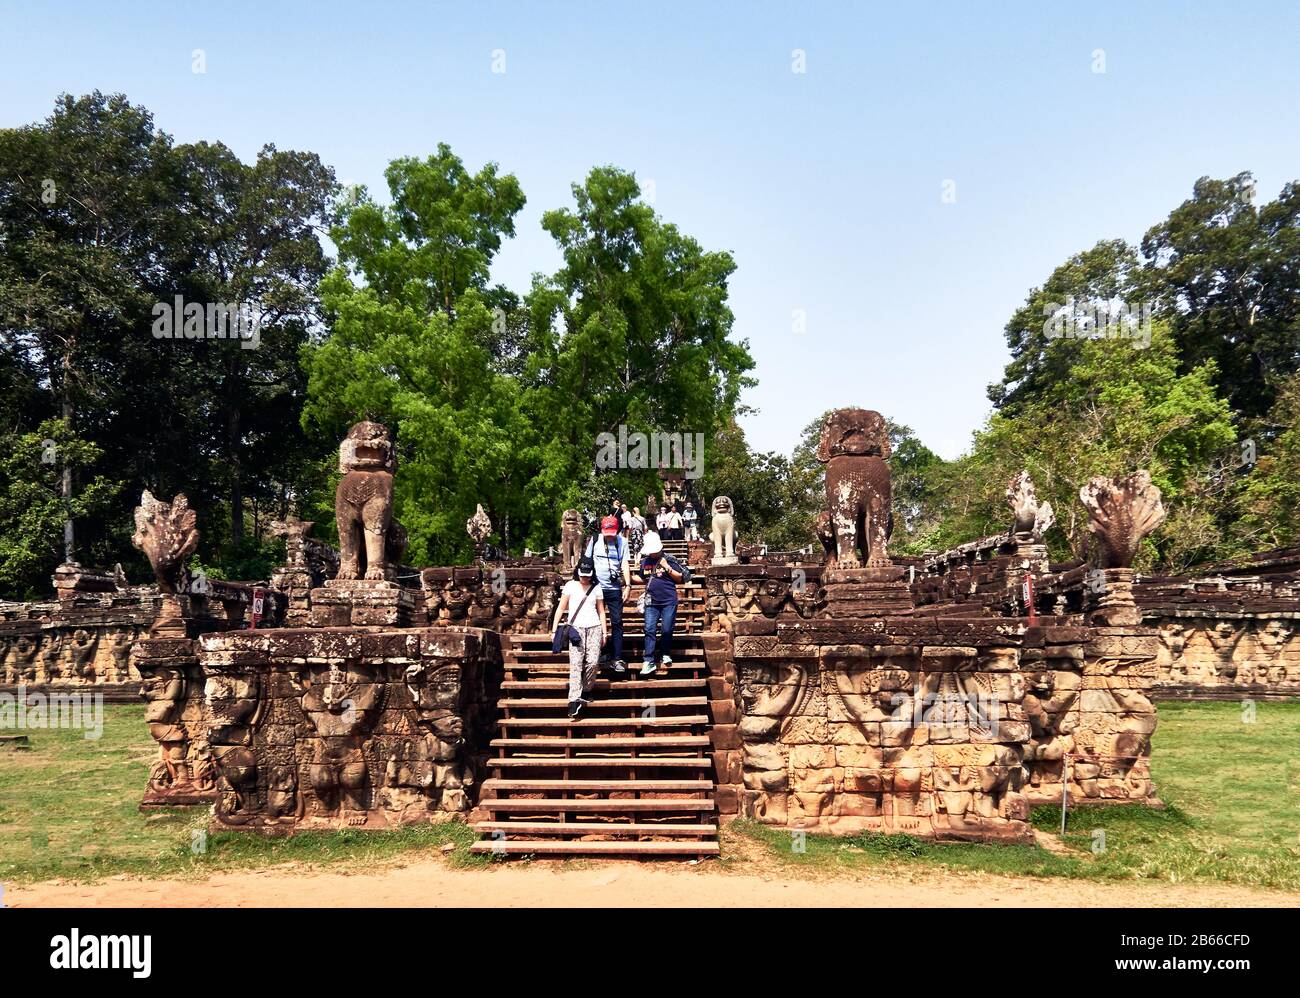 Die leper King's Terrace ist Teil der ummauerten Stadt Angkor Thom, einer zerstörten Tempelanlage in Kambodscha. Die Terrasse wurde von Angkors König Jayavarman VII. Als Plattform genutzt, von der aus er seine siegreiche zurückkehrende Armee betrachten konnte. Es wurde an den Palast von Phimeanakas angeschlossen, von dem nur noch wenige Ruinen übrig sind. Der größte Teil der ursprünglichen Struktur bestand aus organischem Material und ist längst verschwunden. Stockfoto